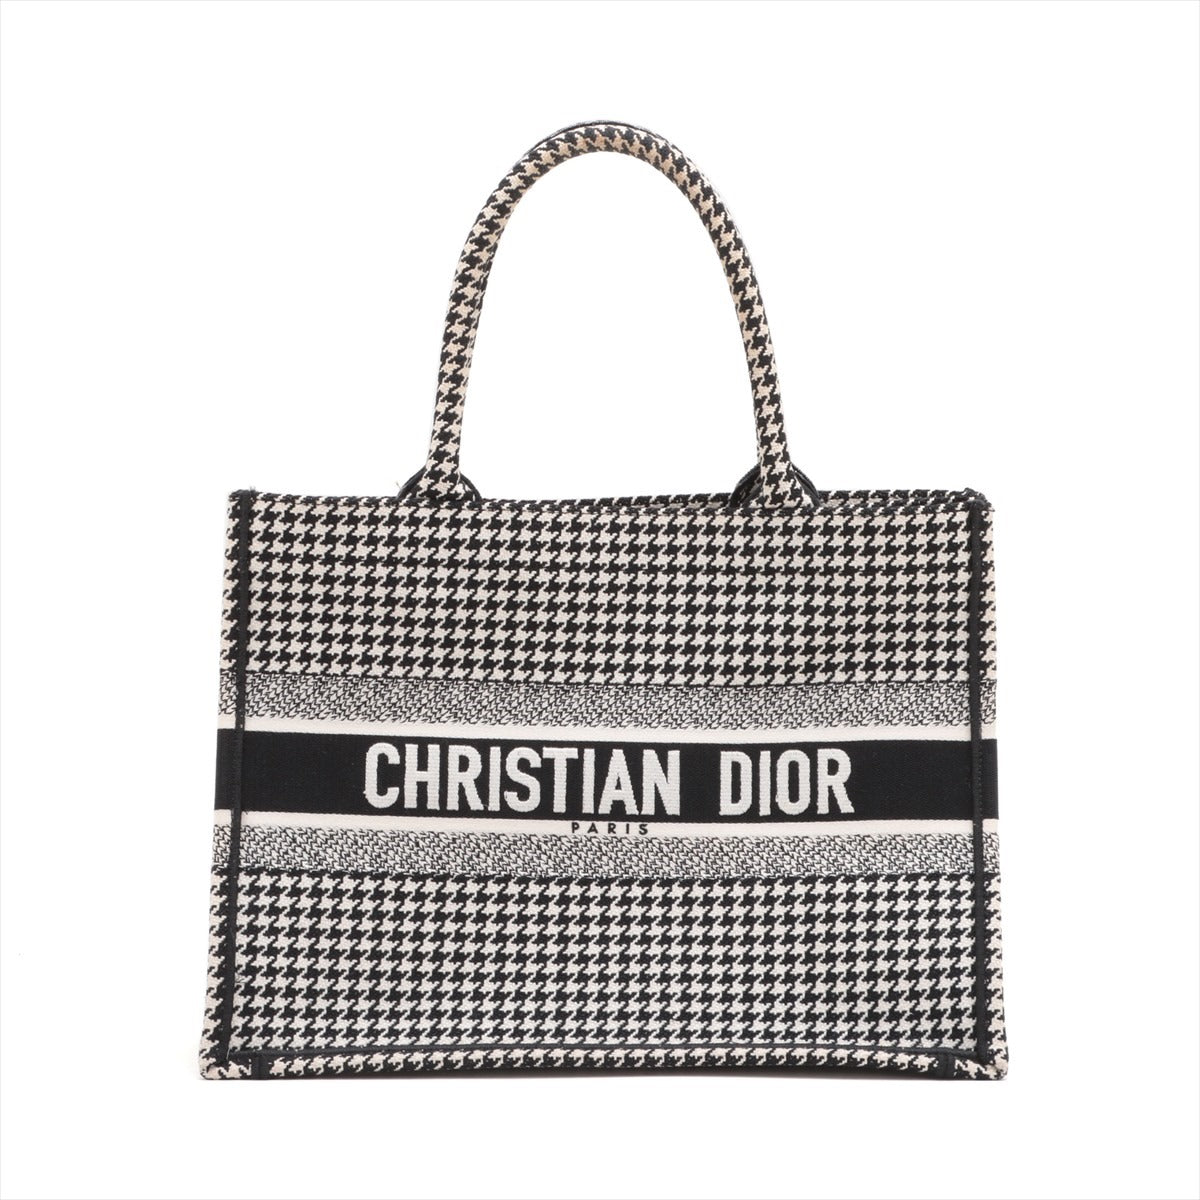 Christian Dior Book Tote small canvas Tote bag Black